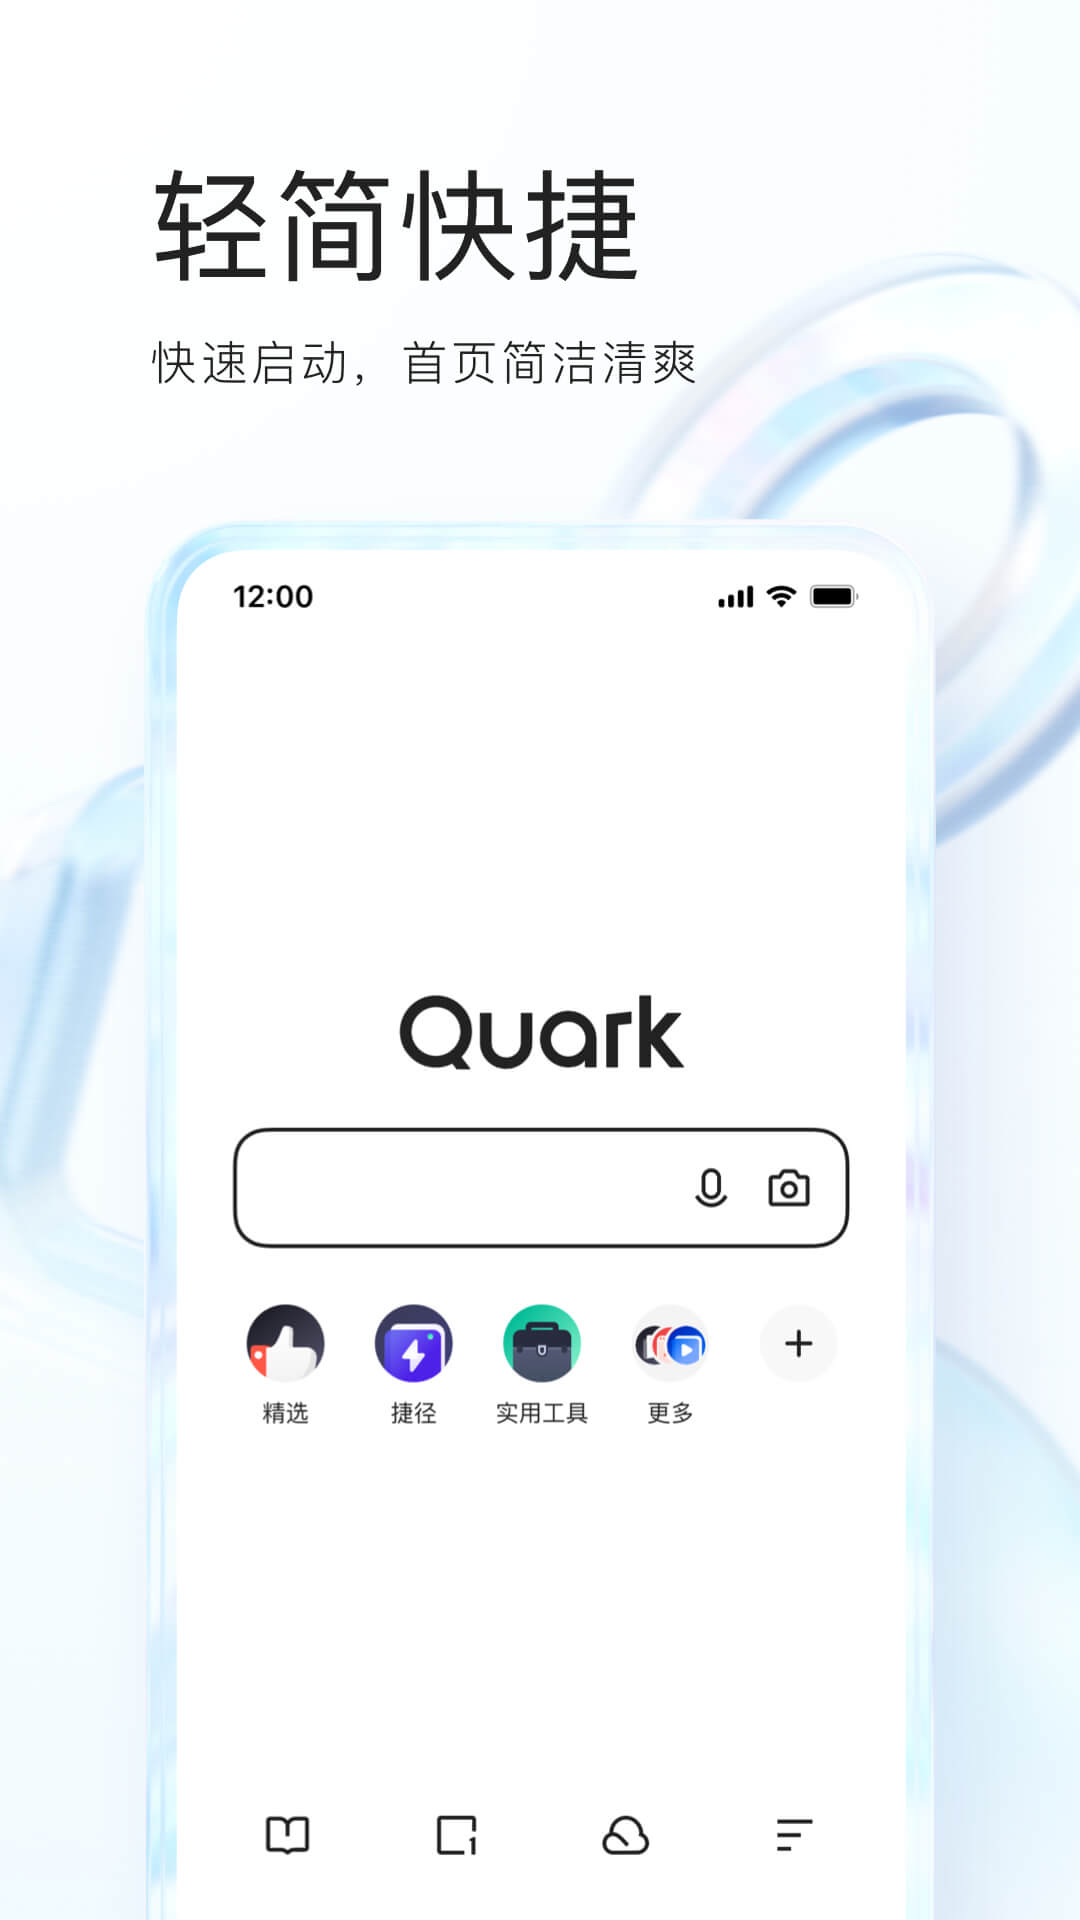 夸克app浏览器